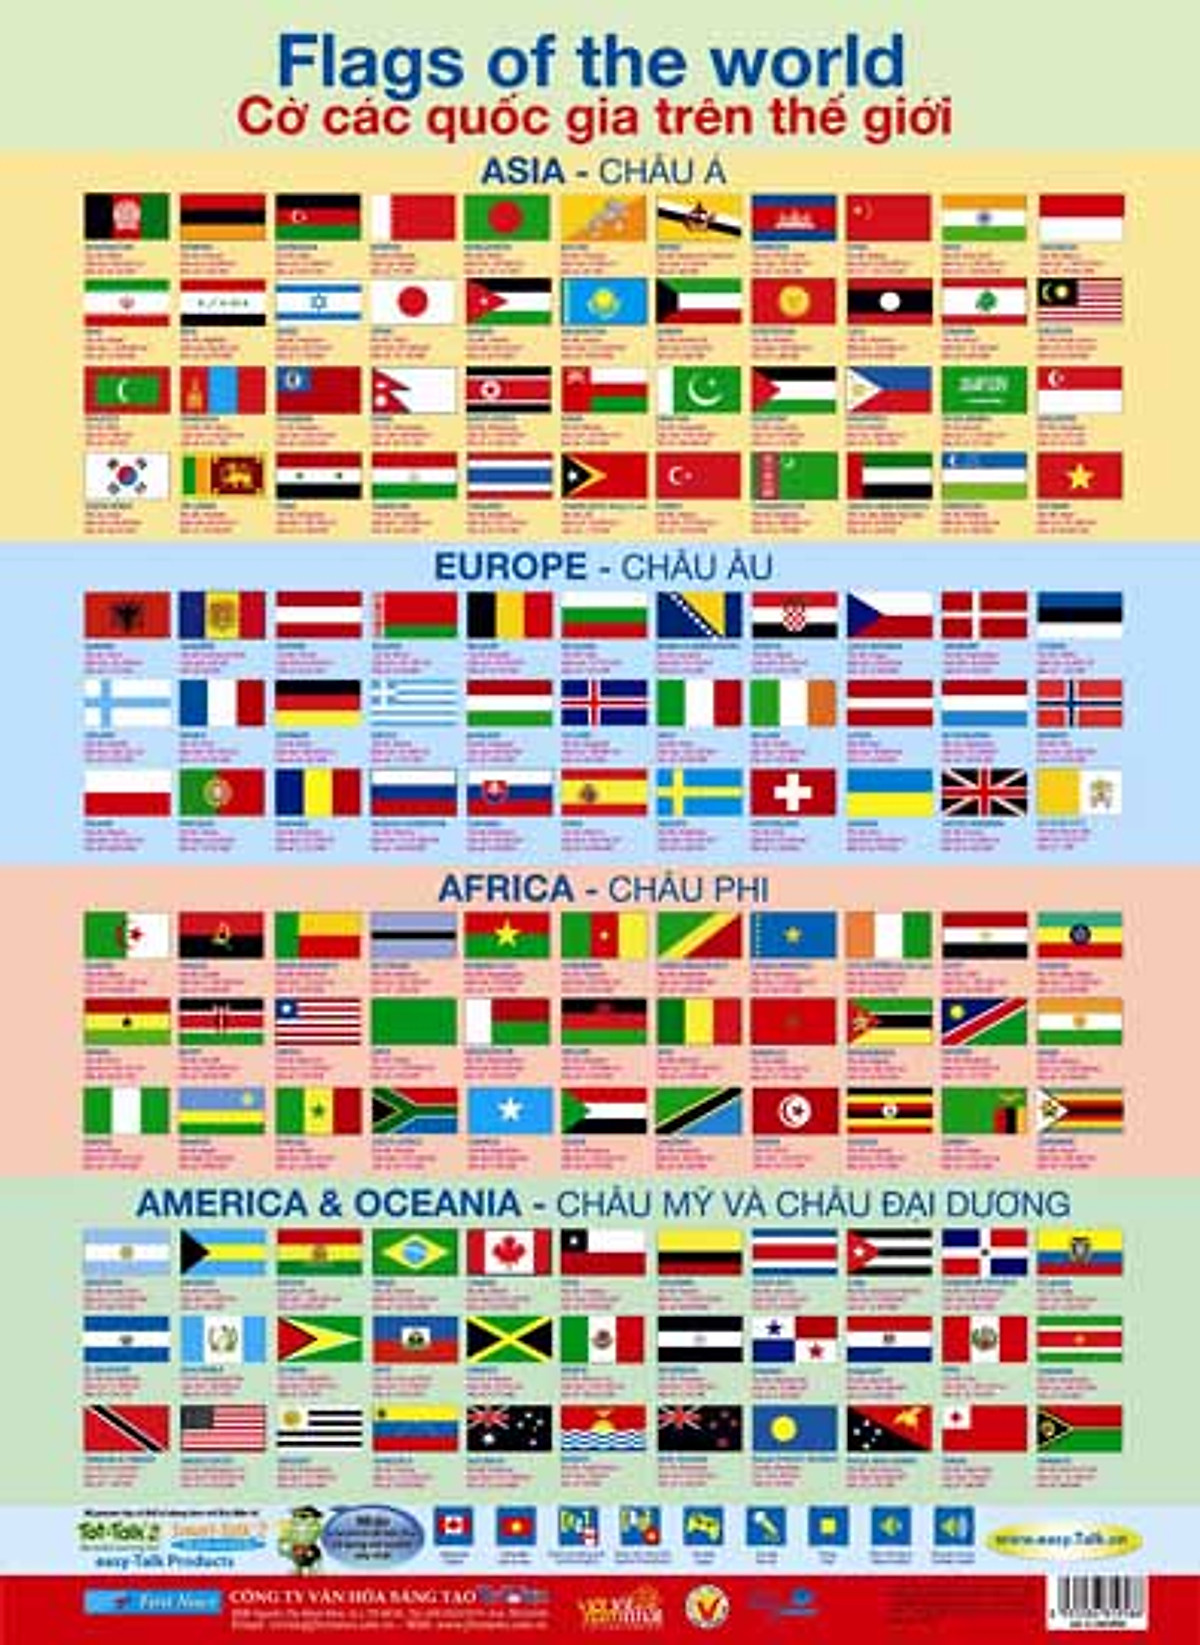 Mua poster cờ quốc gia: Tận dụng cơ hội để mua những tấm poster cờ quốc gia để tôn vinh các quốc kì nổi tiếng trên thế giới và thể hiện tình yêu đất nước của riêng bạn. Chúng tôi cung cấp đủ các loại quốc kì để bạn lựa chọn và trang trí phòng của mình với những poster cờ quốc gia độc đáo và ý nghĩa.